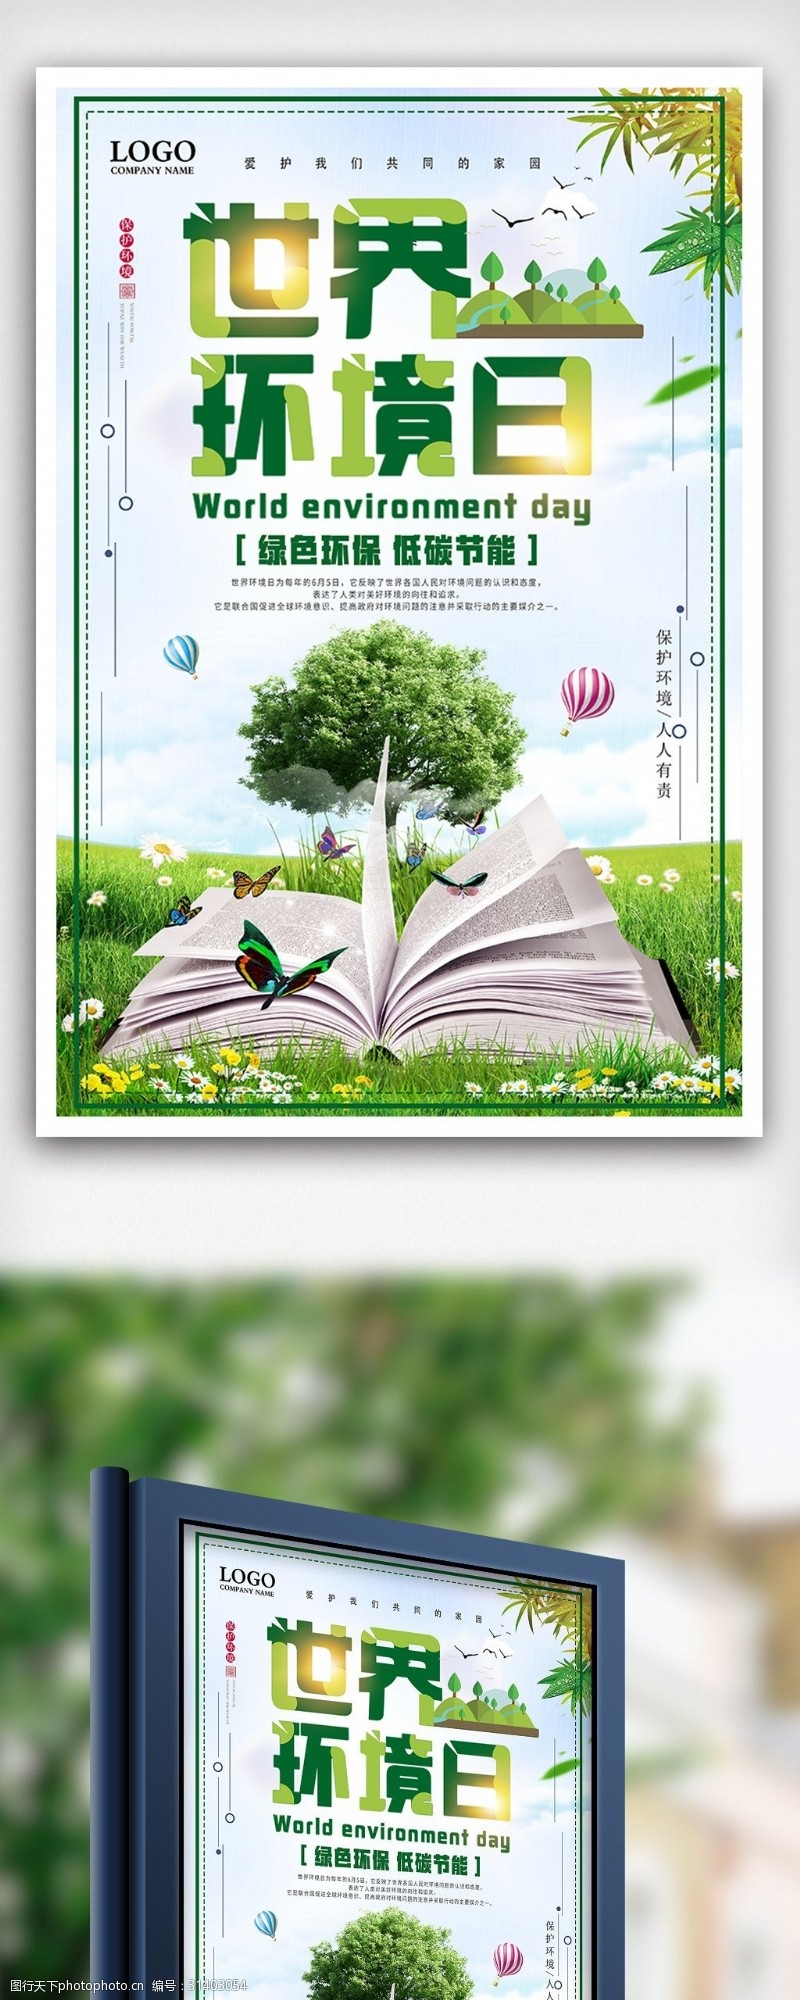 淘宝海报免费下载绿色环保世界环境日节日海报设计